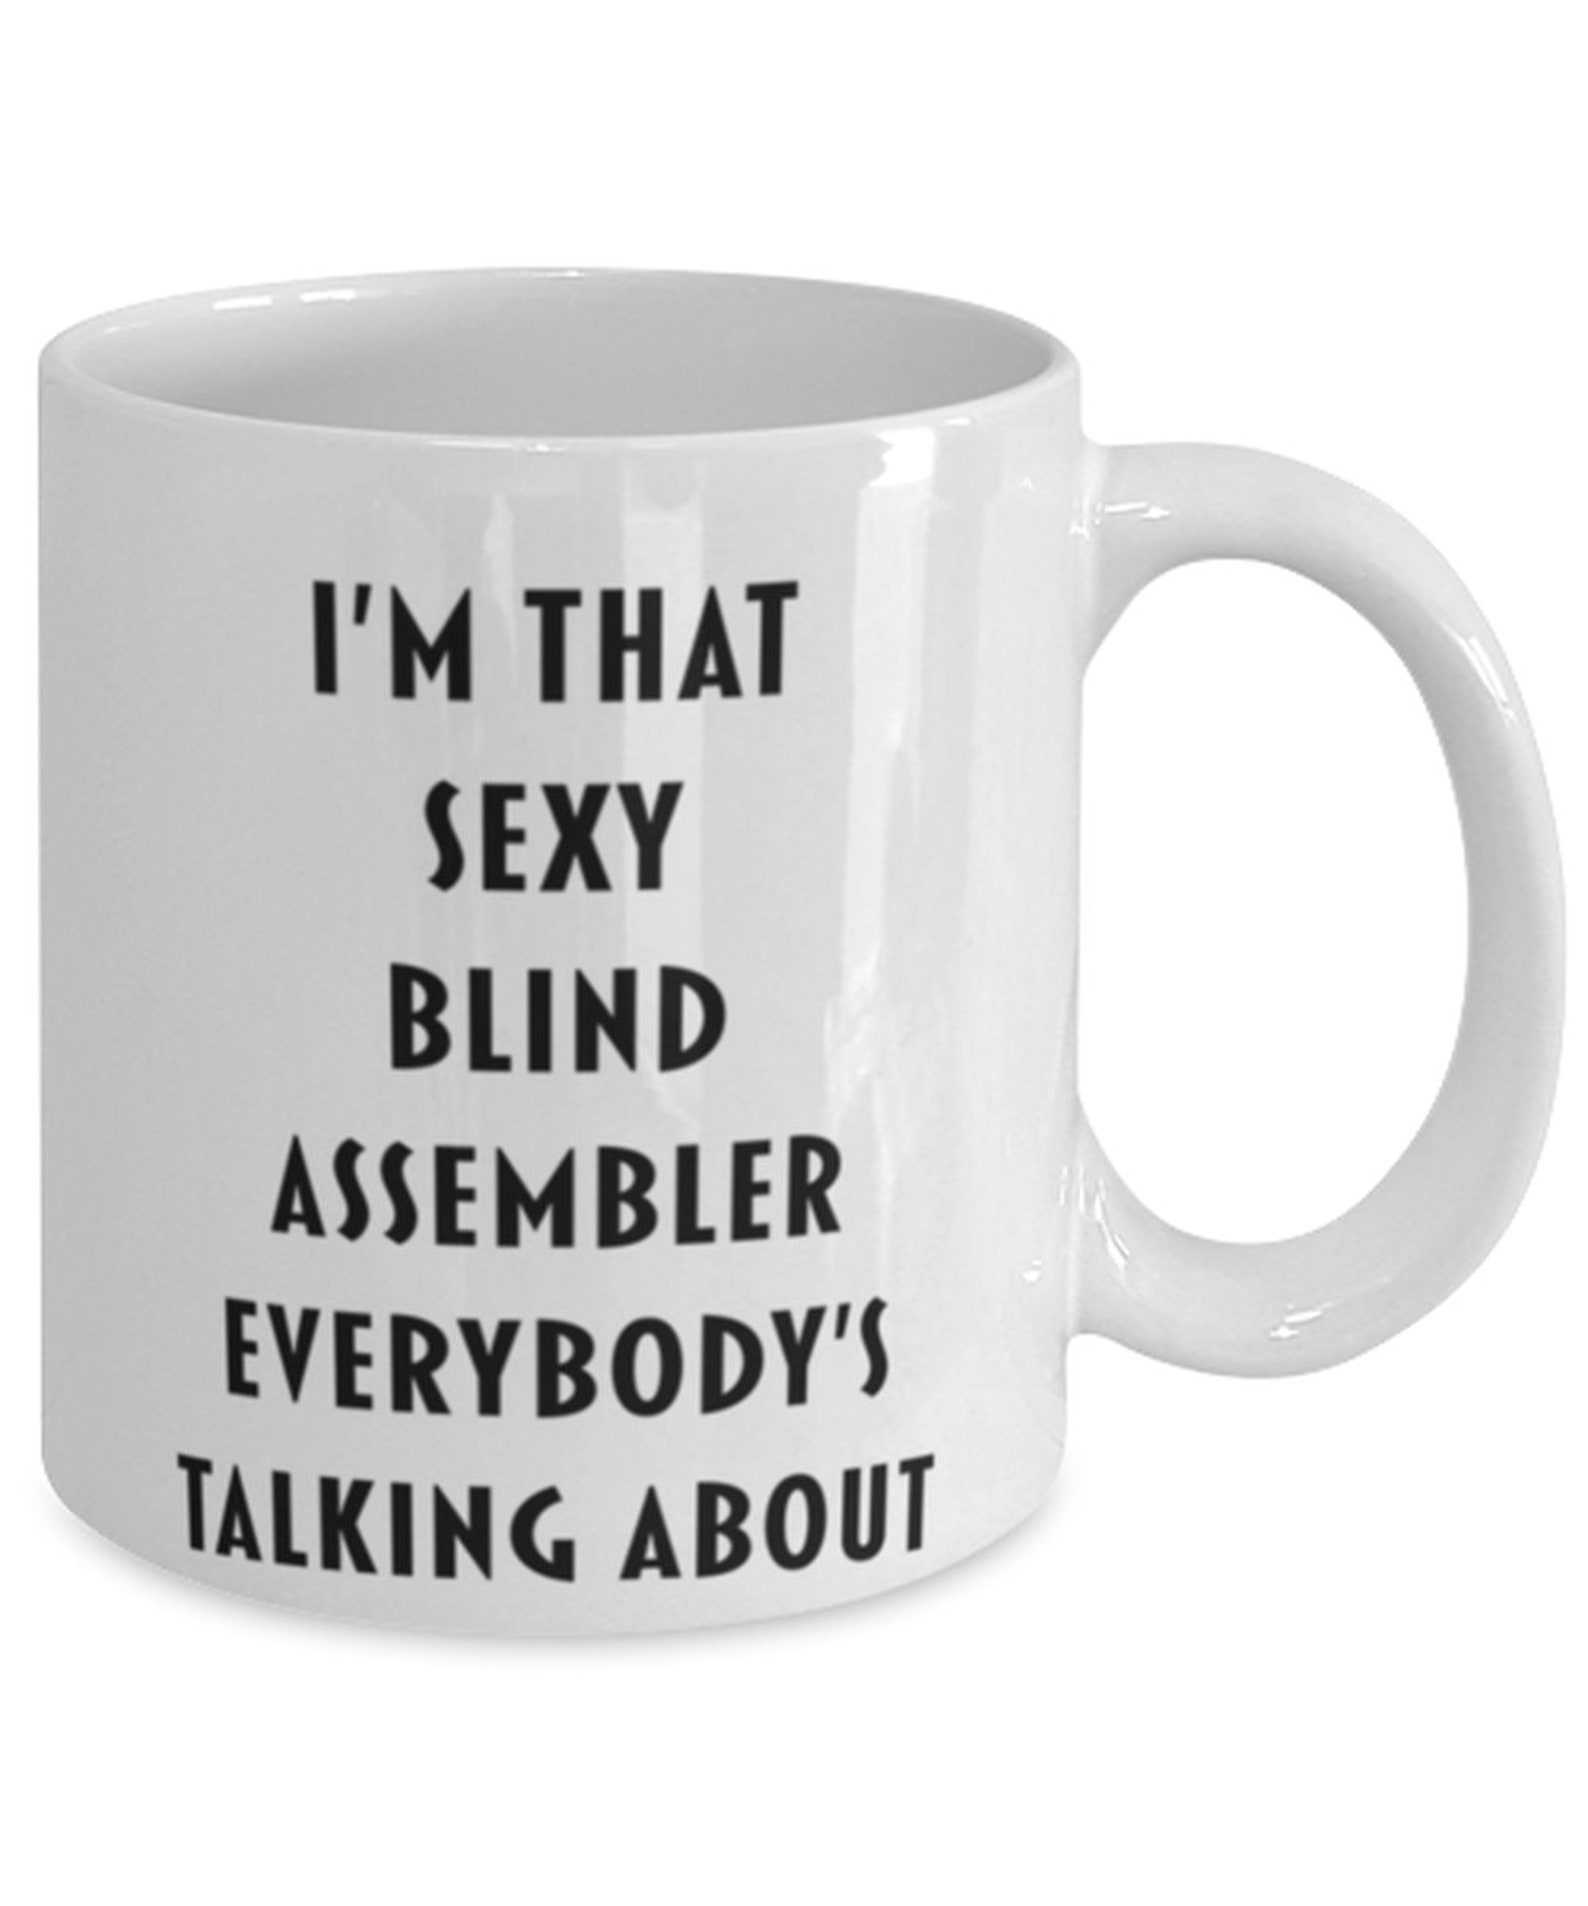 Blind Assembler Coffee Mug Funny Blind Assembler Cup Gift